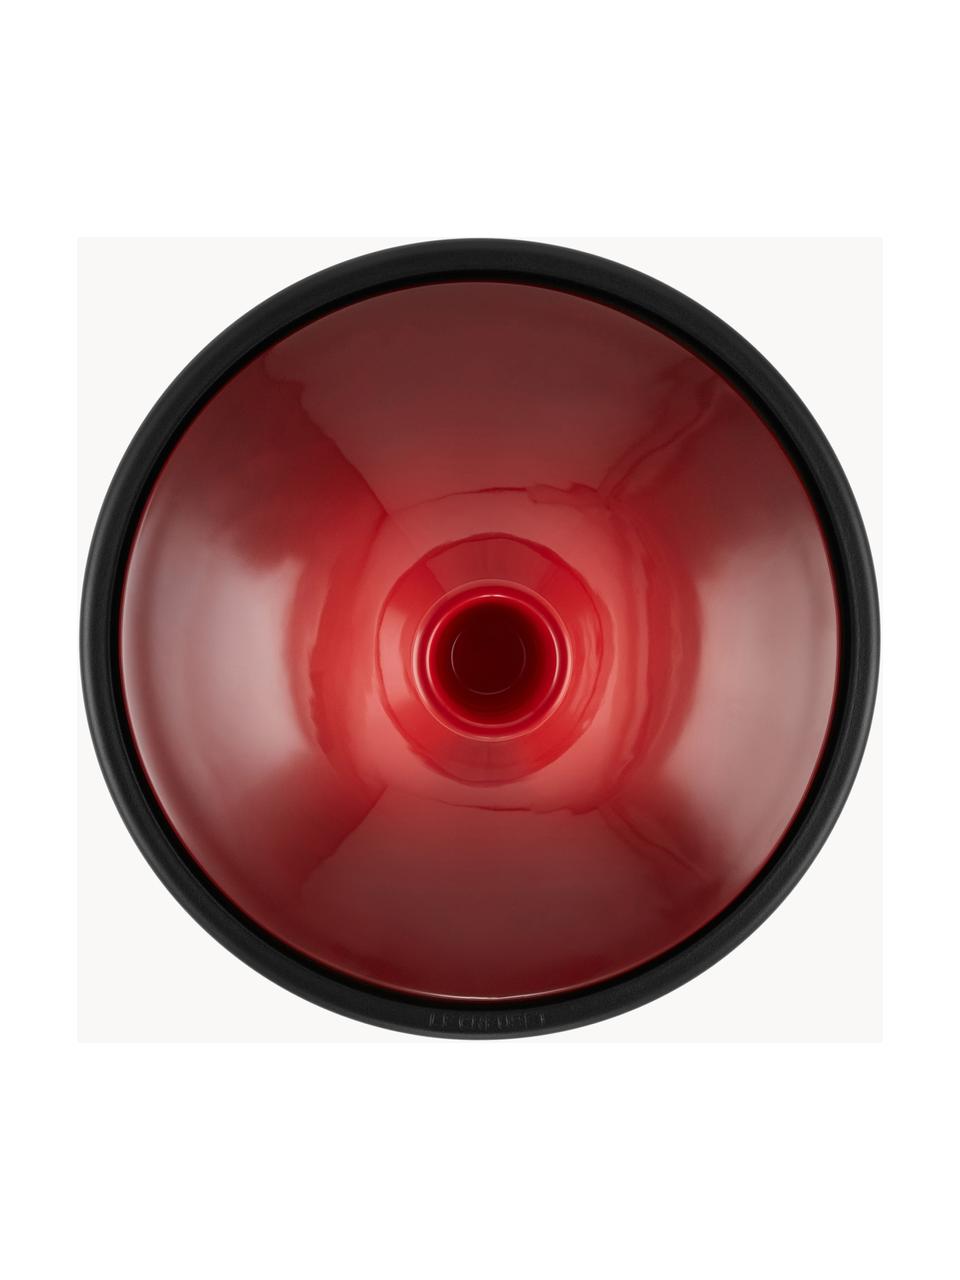 Hrnec tajine Creuset, Červená, černá, Ø 32 cm, V 31 cm, 3,7 l